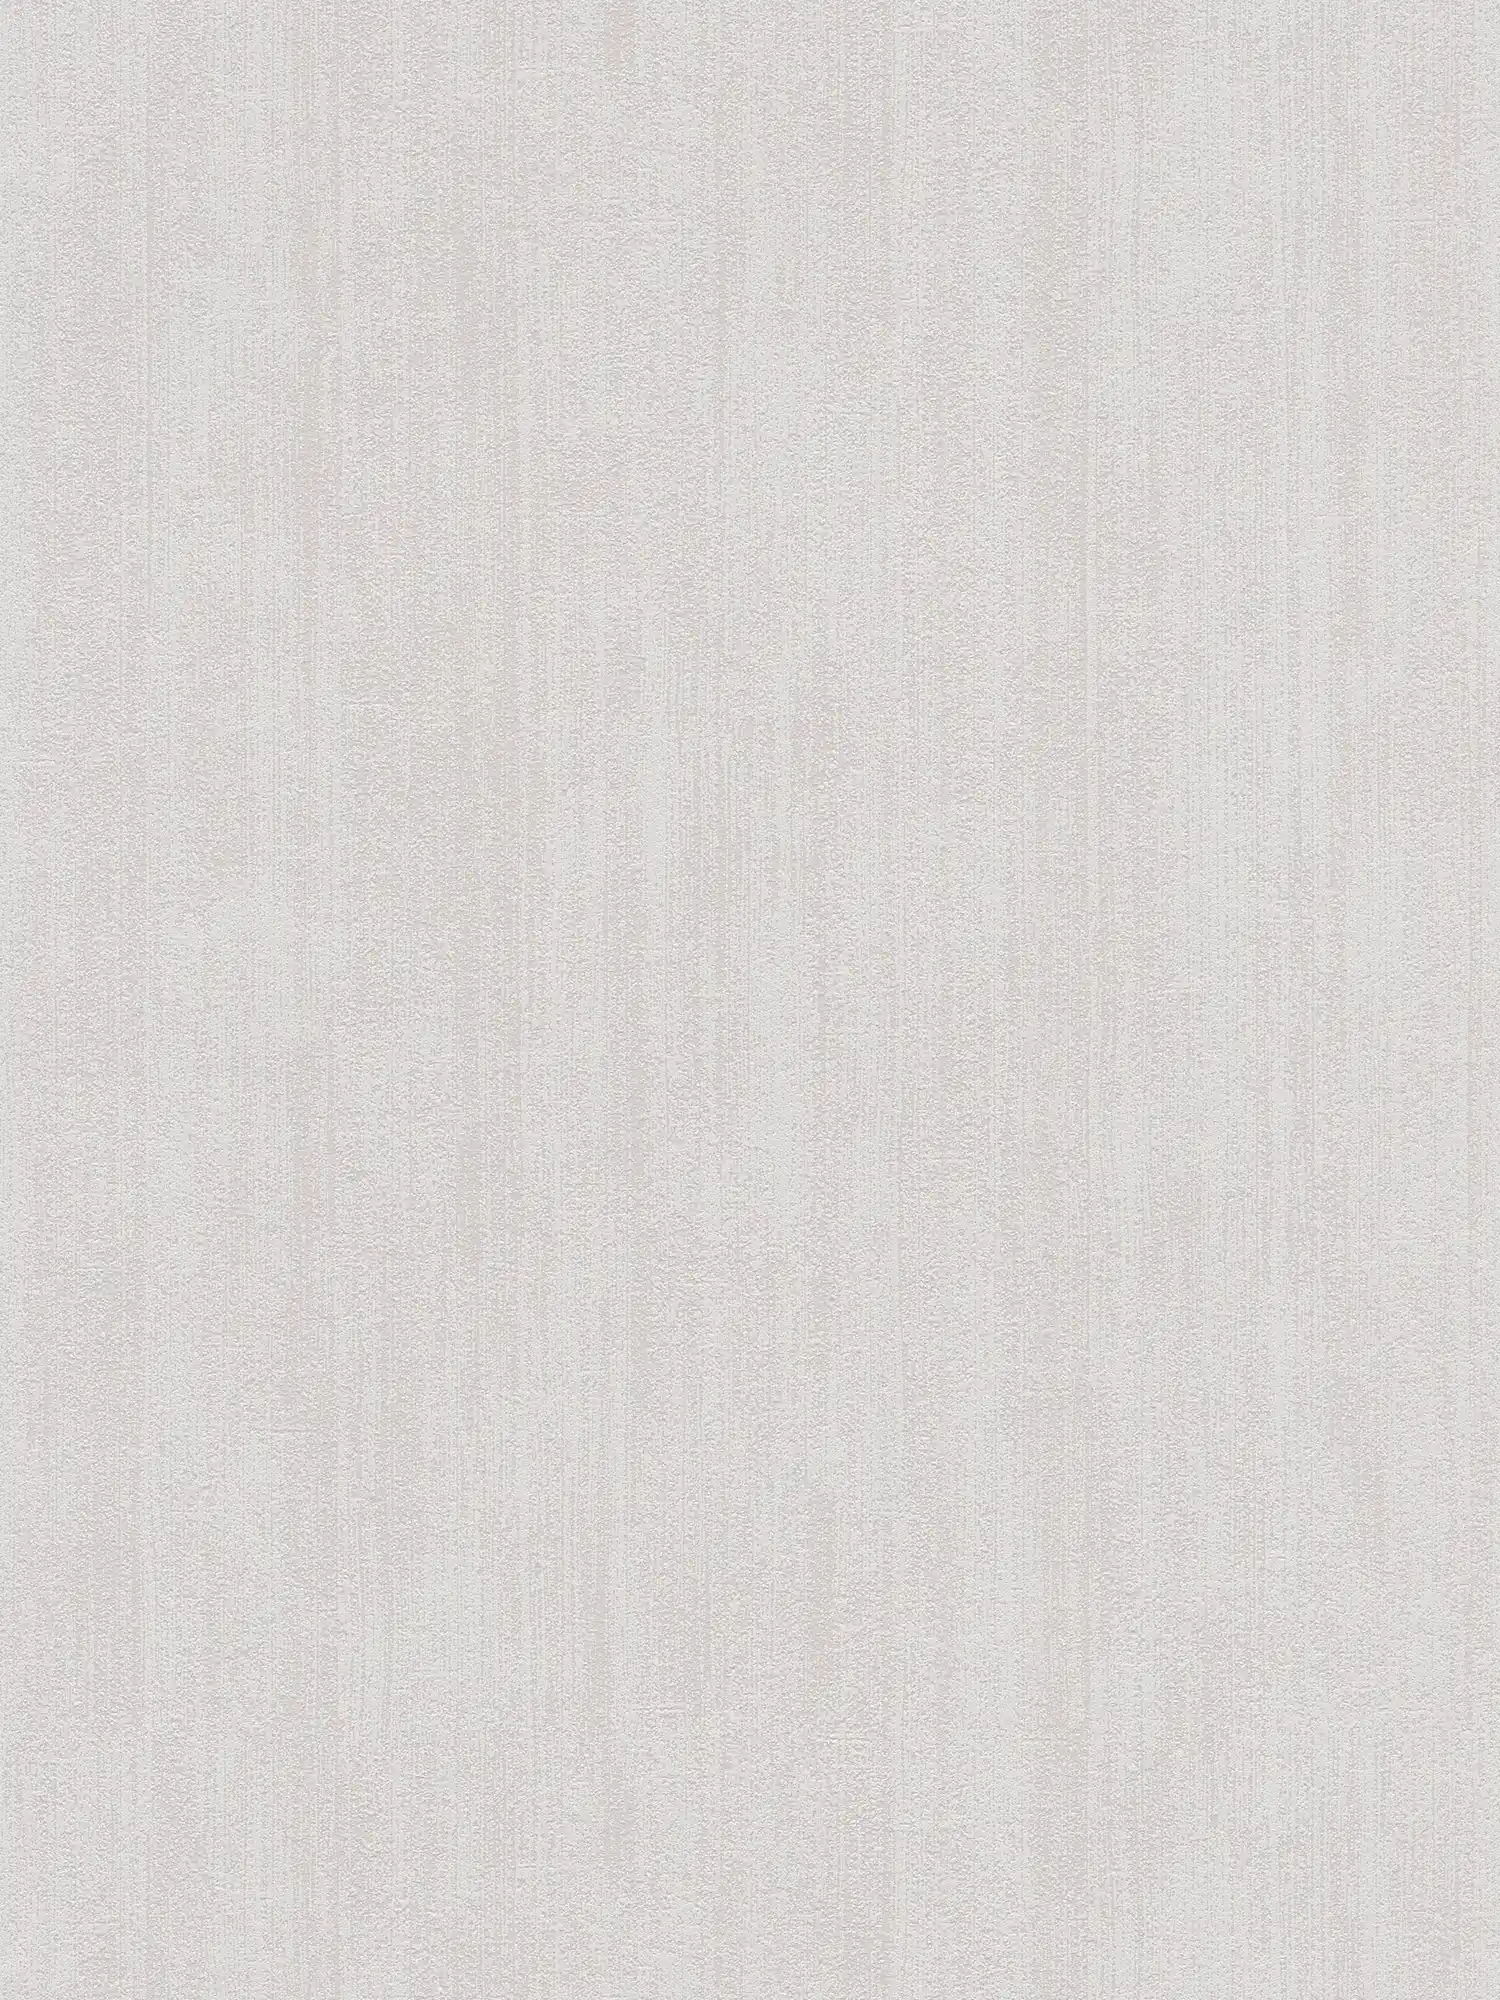 Hatched plain wallpaper with subtle texture - beige
